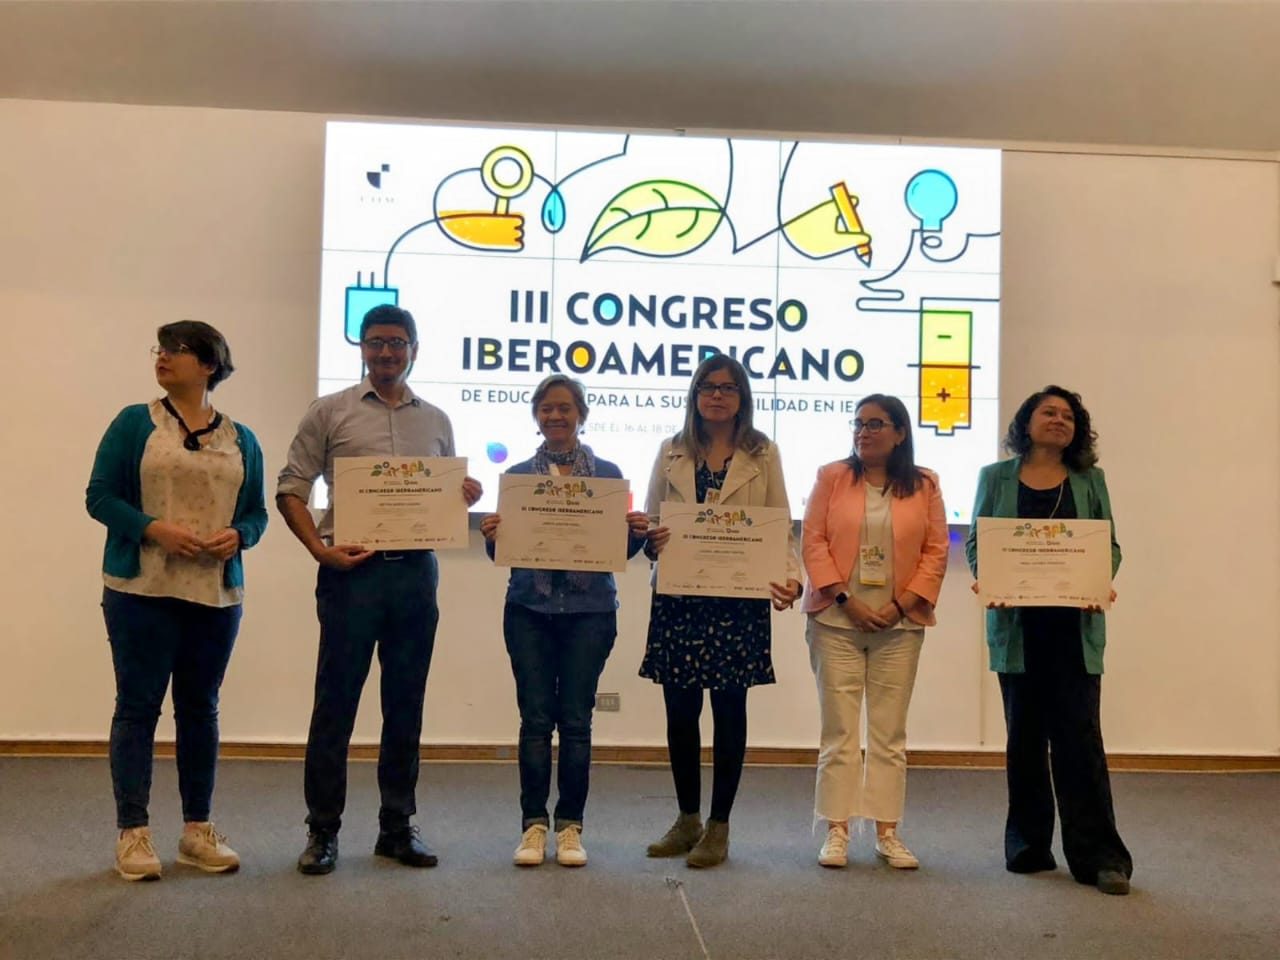 La UCT participa en el III Congreso Iberoamericano de Educación para la Sustentabilidad